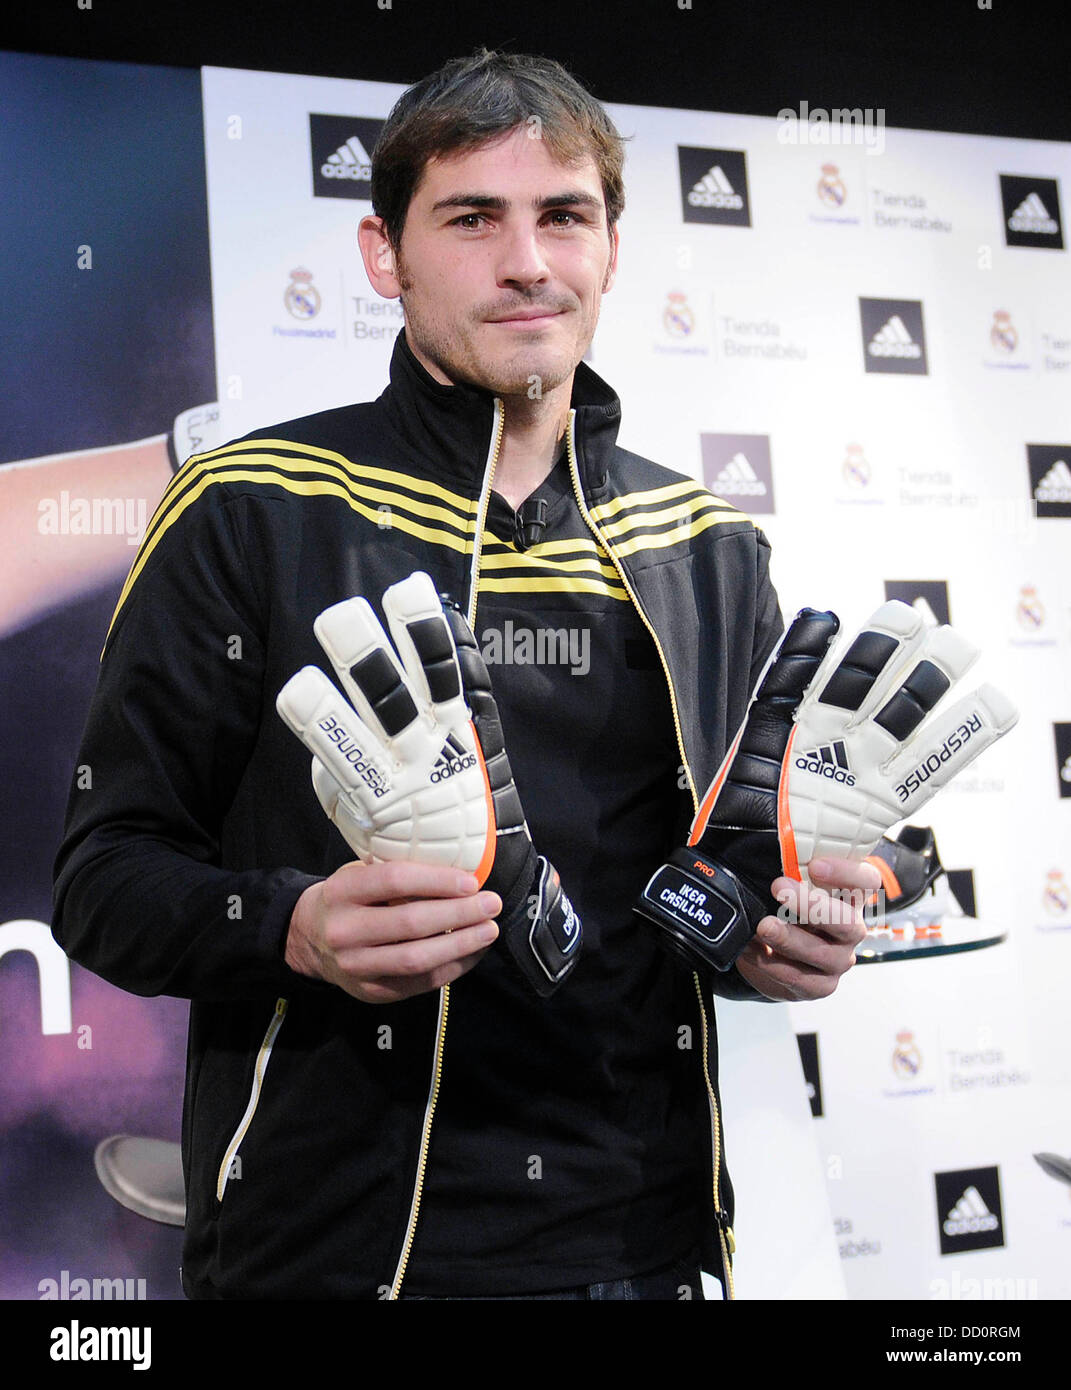 Iker Casillas se dio a conocer nuevo rostro de Adidas, Madrid, España - 12.01.12 Fotografía de -